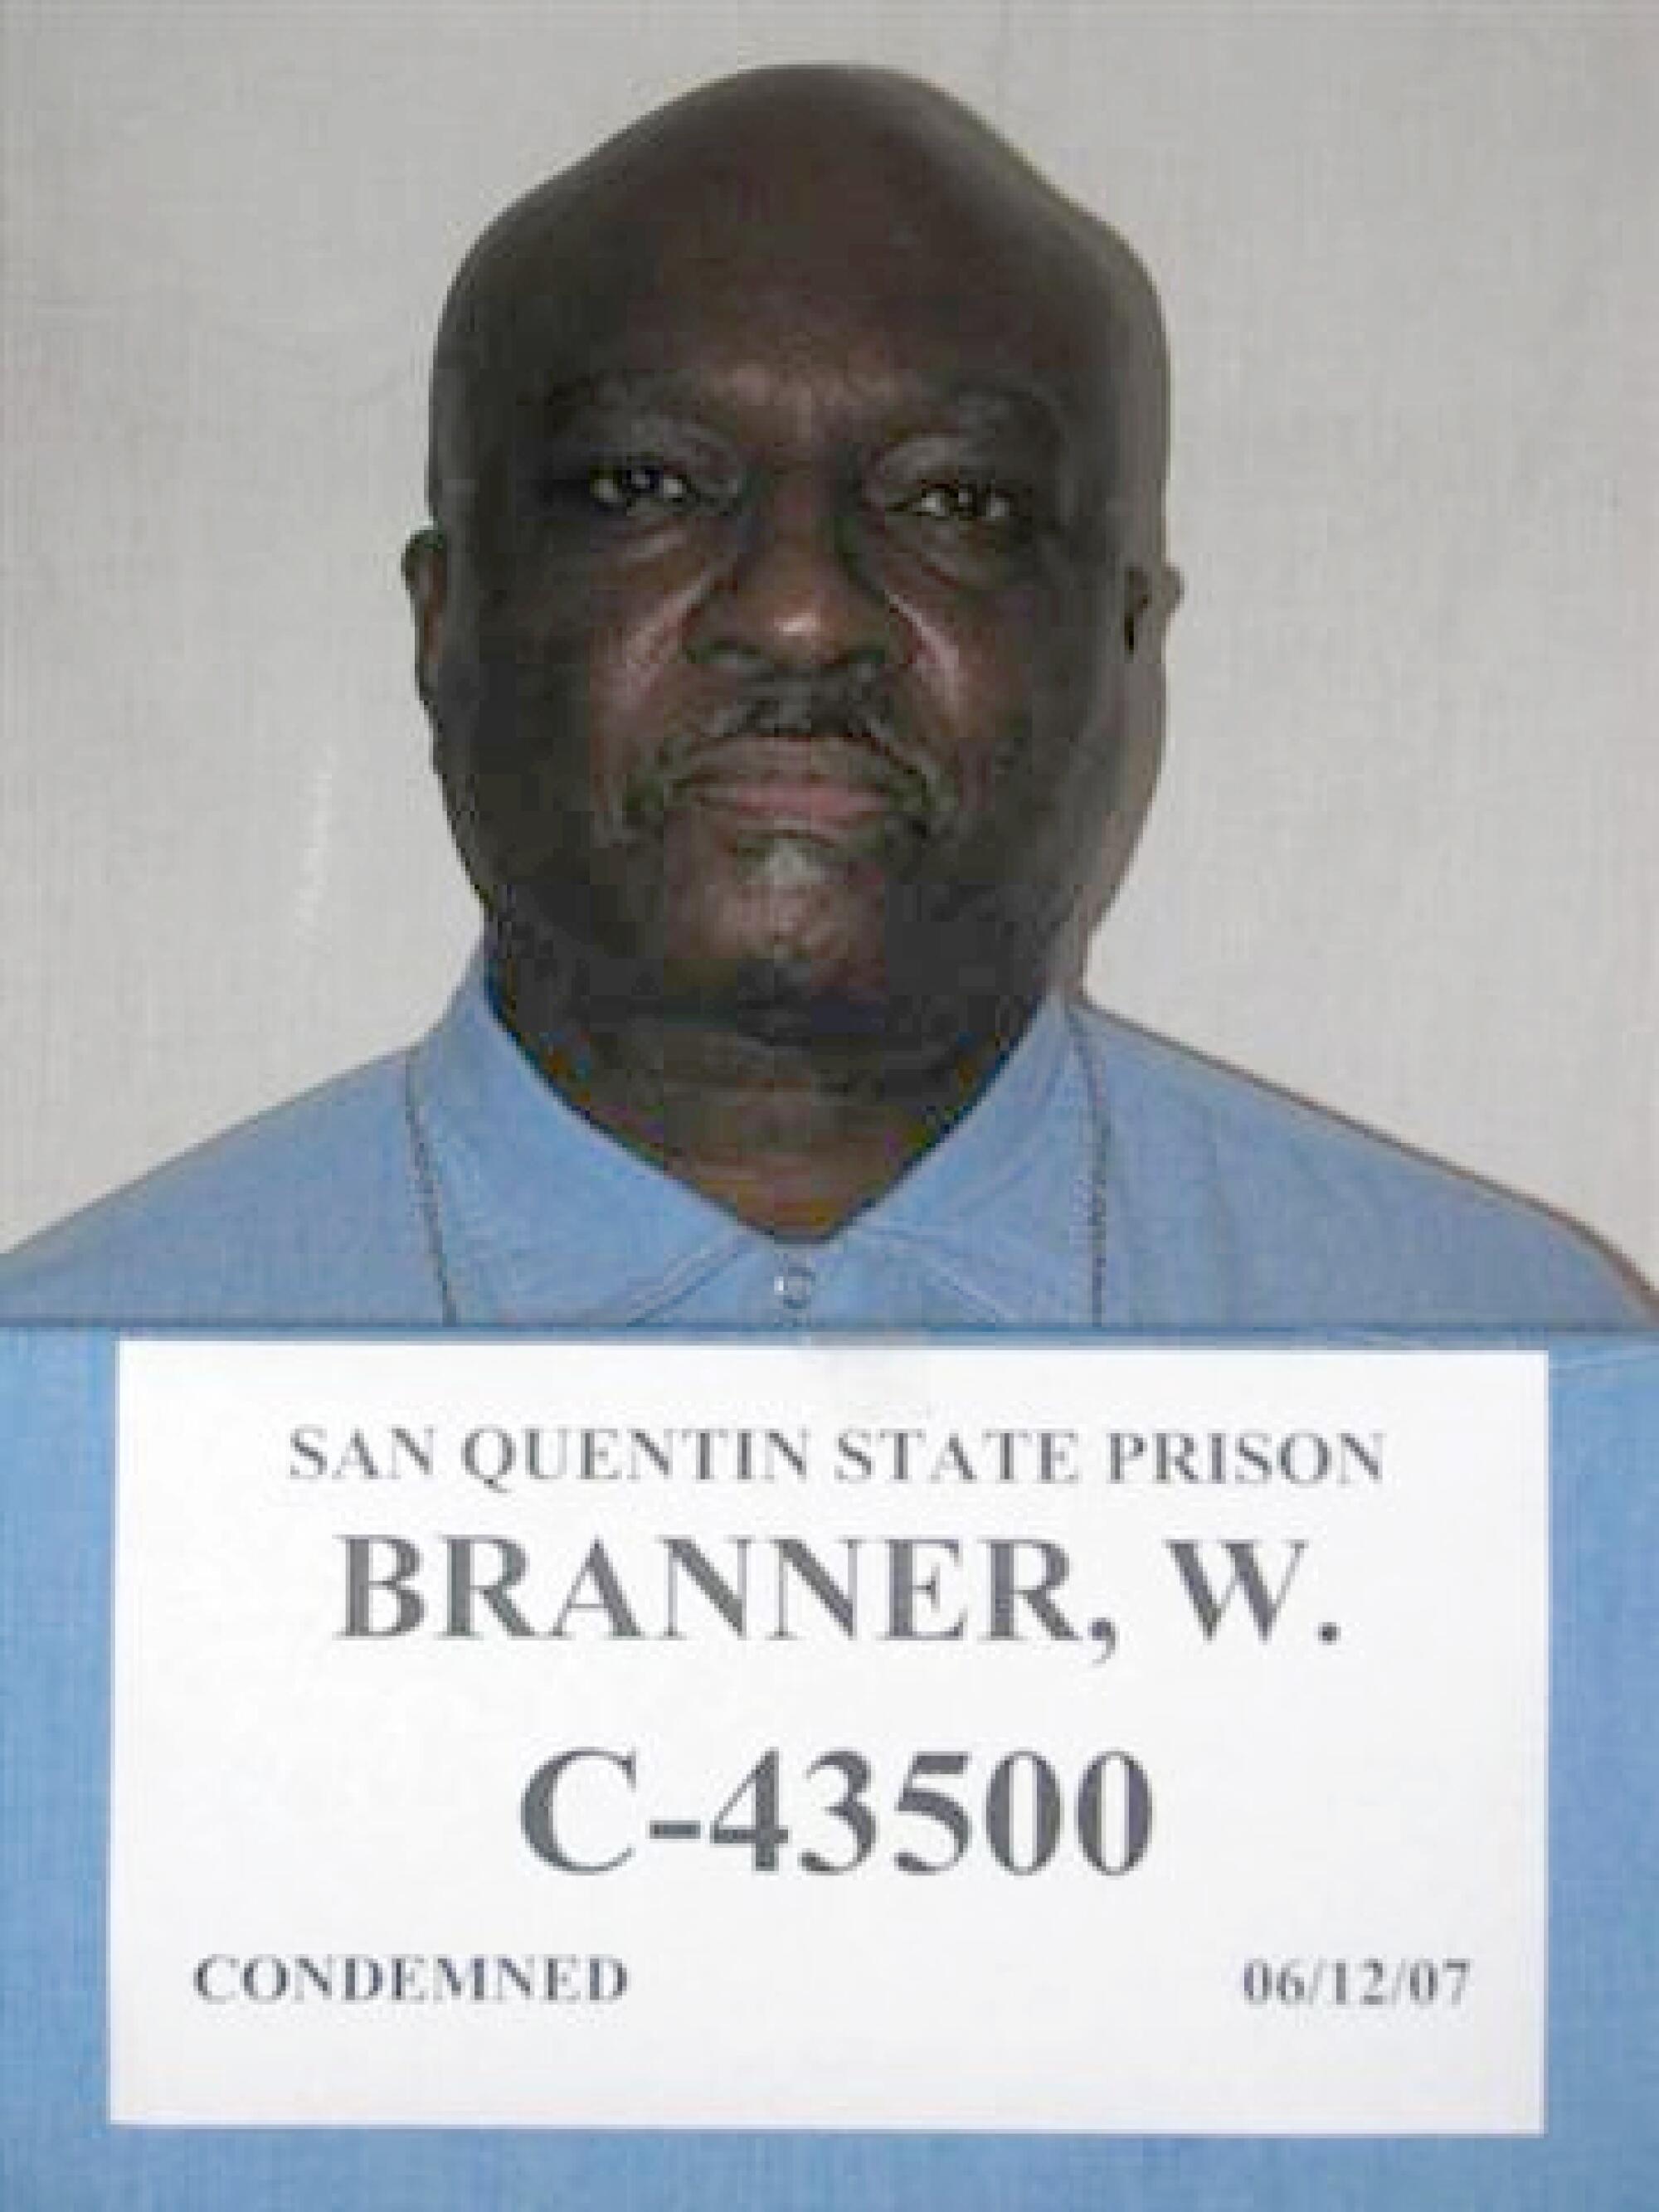 Willie Branner, C-43500